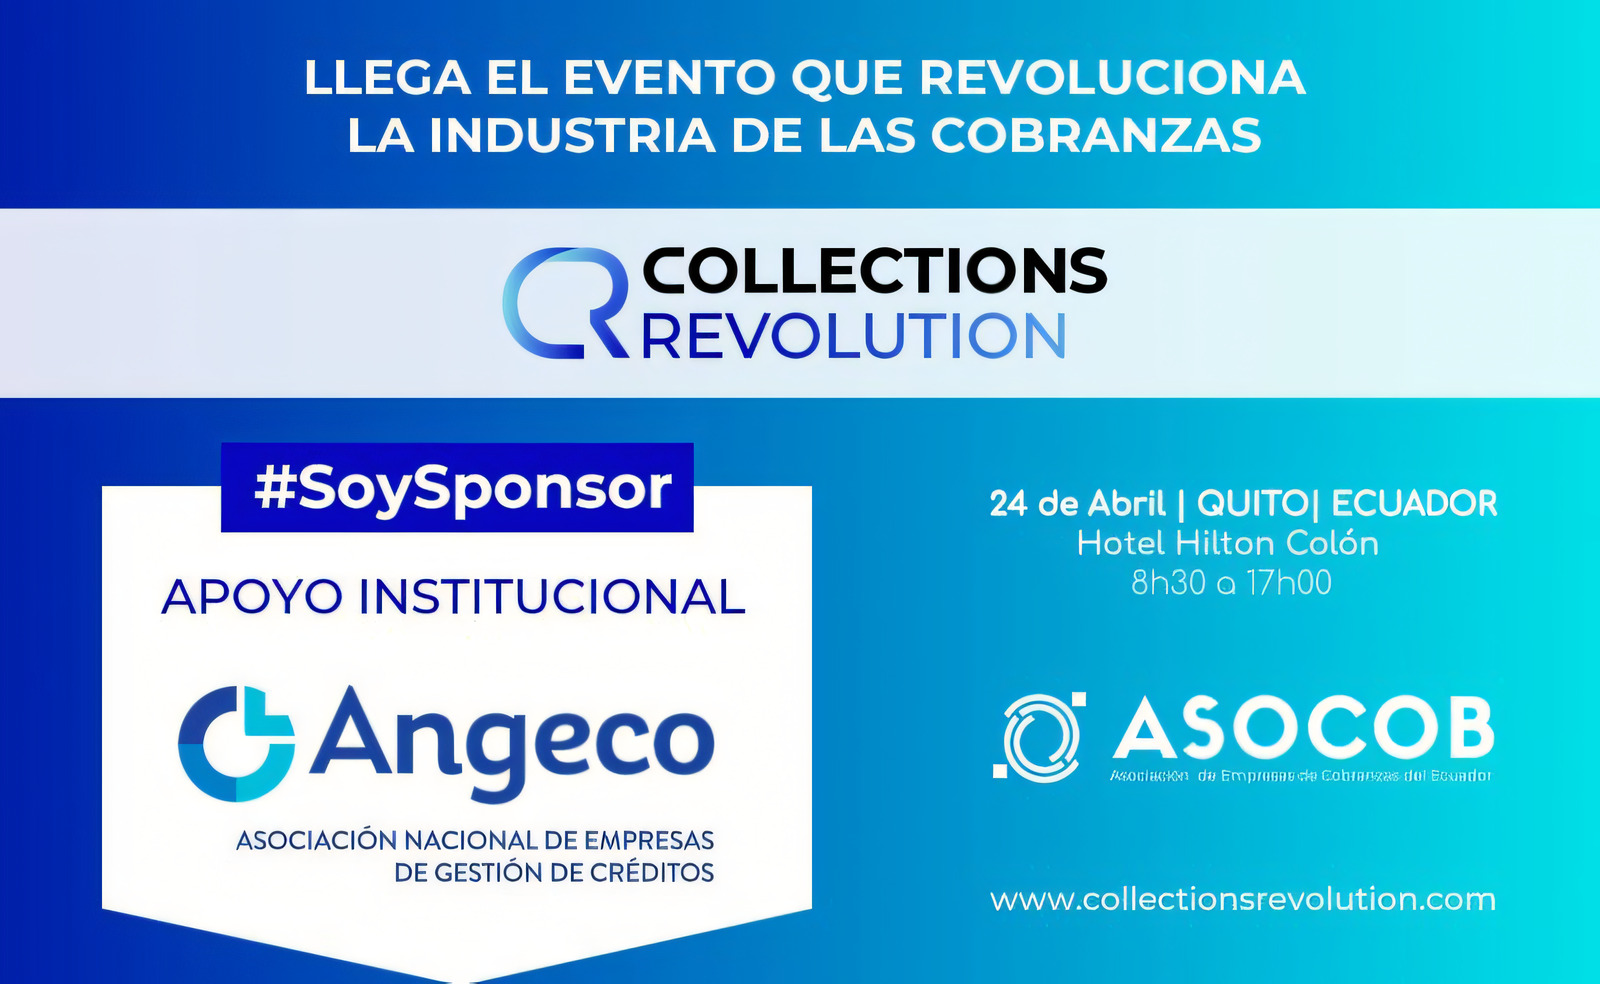 Collections Revolution de Ecuador